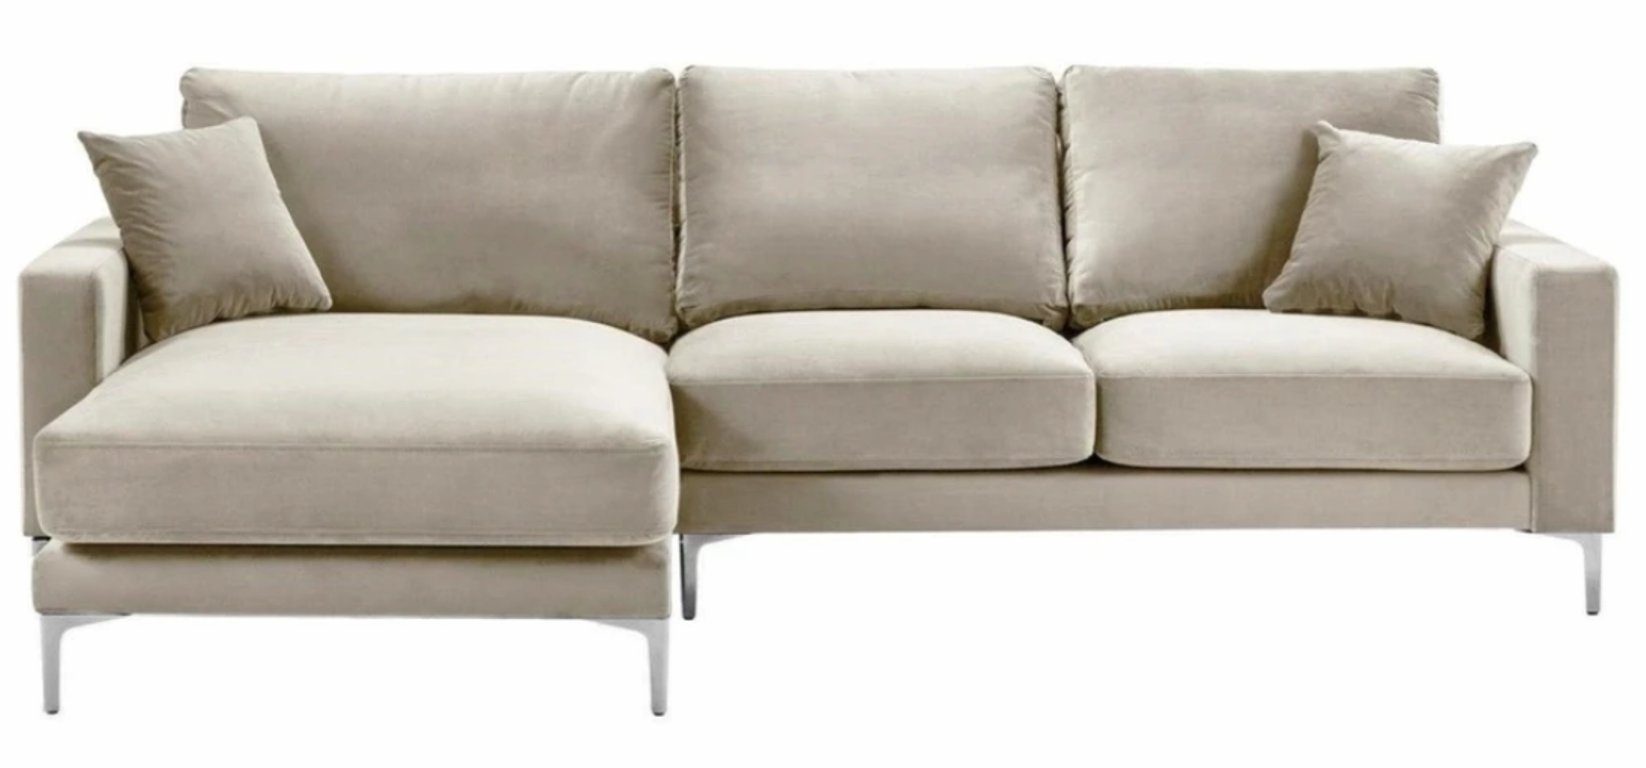 Luxus Eckcouch Beige Sofa in Europe modernes JVmoebel Made Polstermöbel Brandneu, L-Form Ecksofa